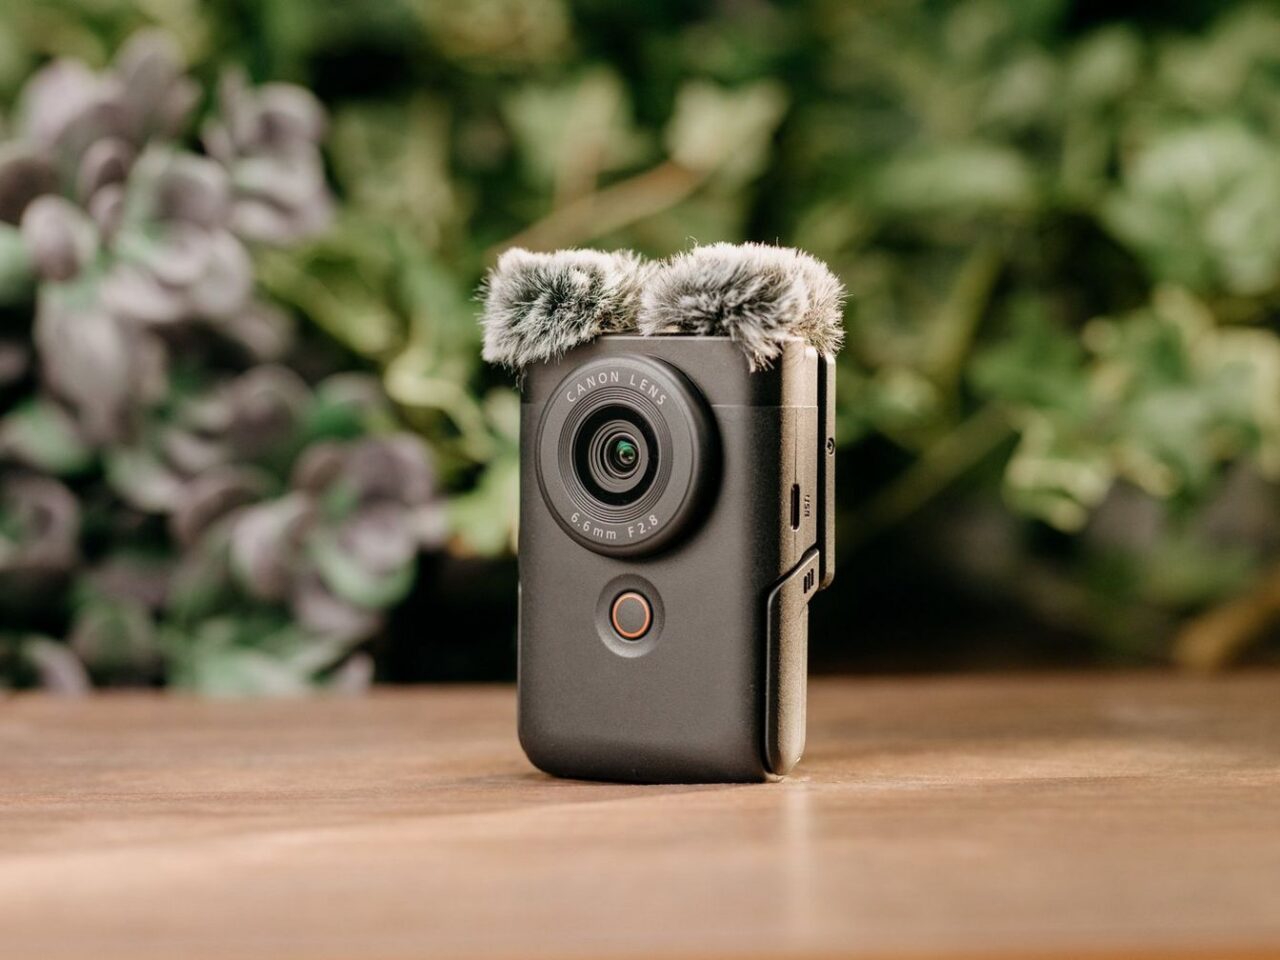 Aparat fotograficzny Canon z obiektywem i małym, puchowym mikrofonem zamocowanym na górze, stojący na drewnianym blacie z roślinnością w tle.